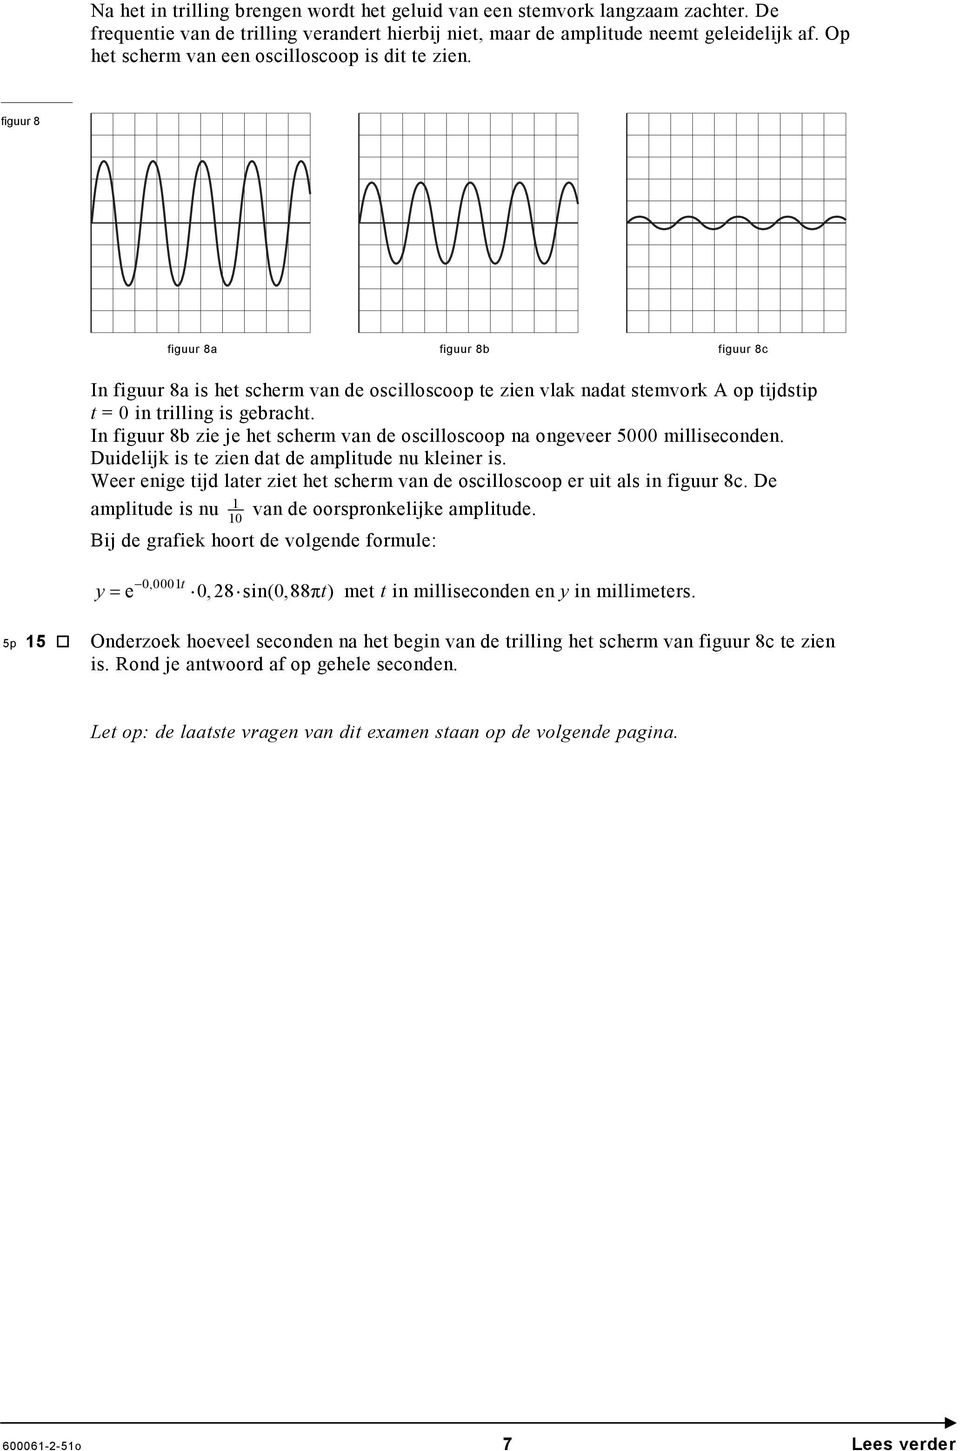 figuur 8 figuur 8a figuur 8b figuur 8c In figuur 8a is het scherm van de oscilloscoop te zien vlak nadat stemvork op tijdstip t = 0 in trilling is gebracht.